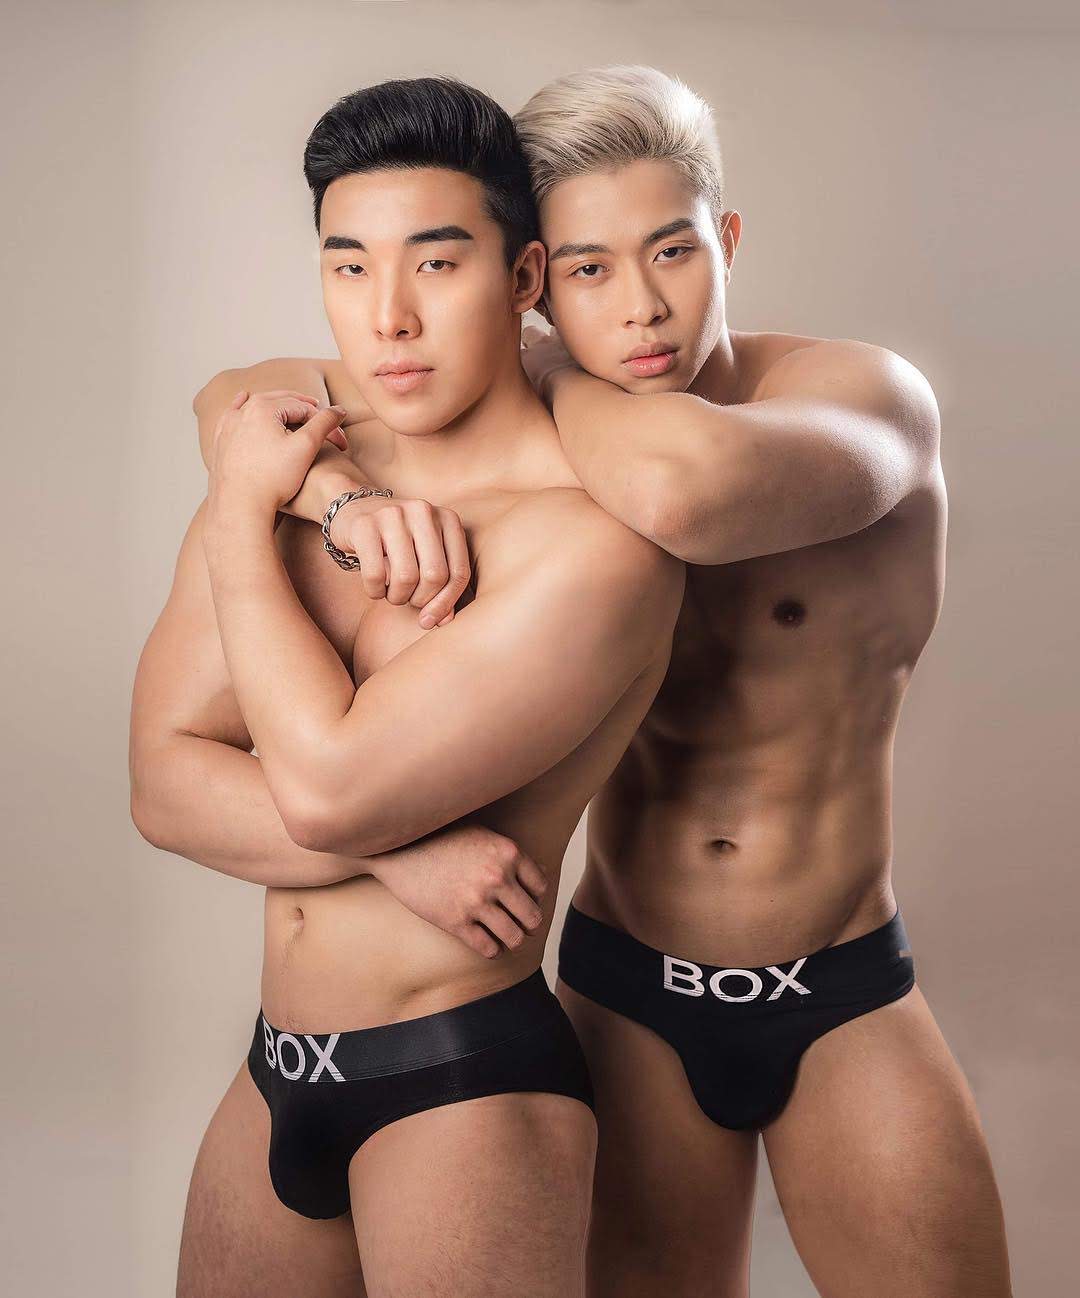 видео с корейскими геями фото 65